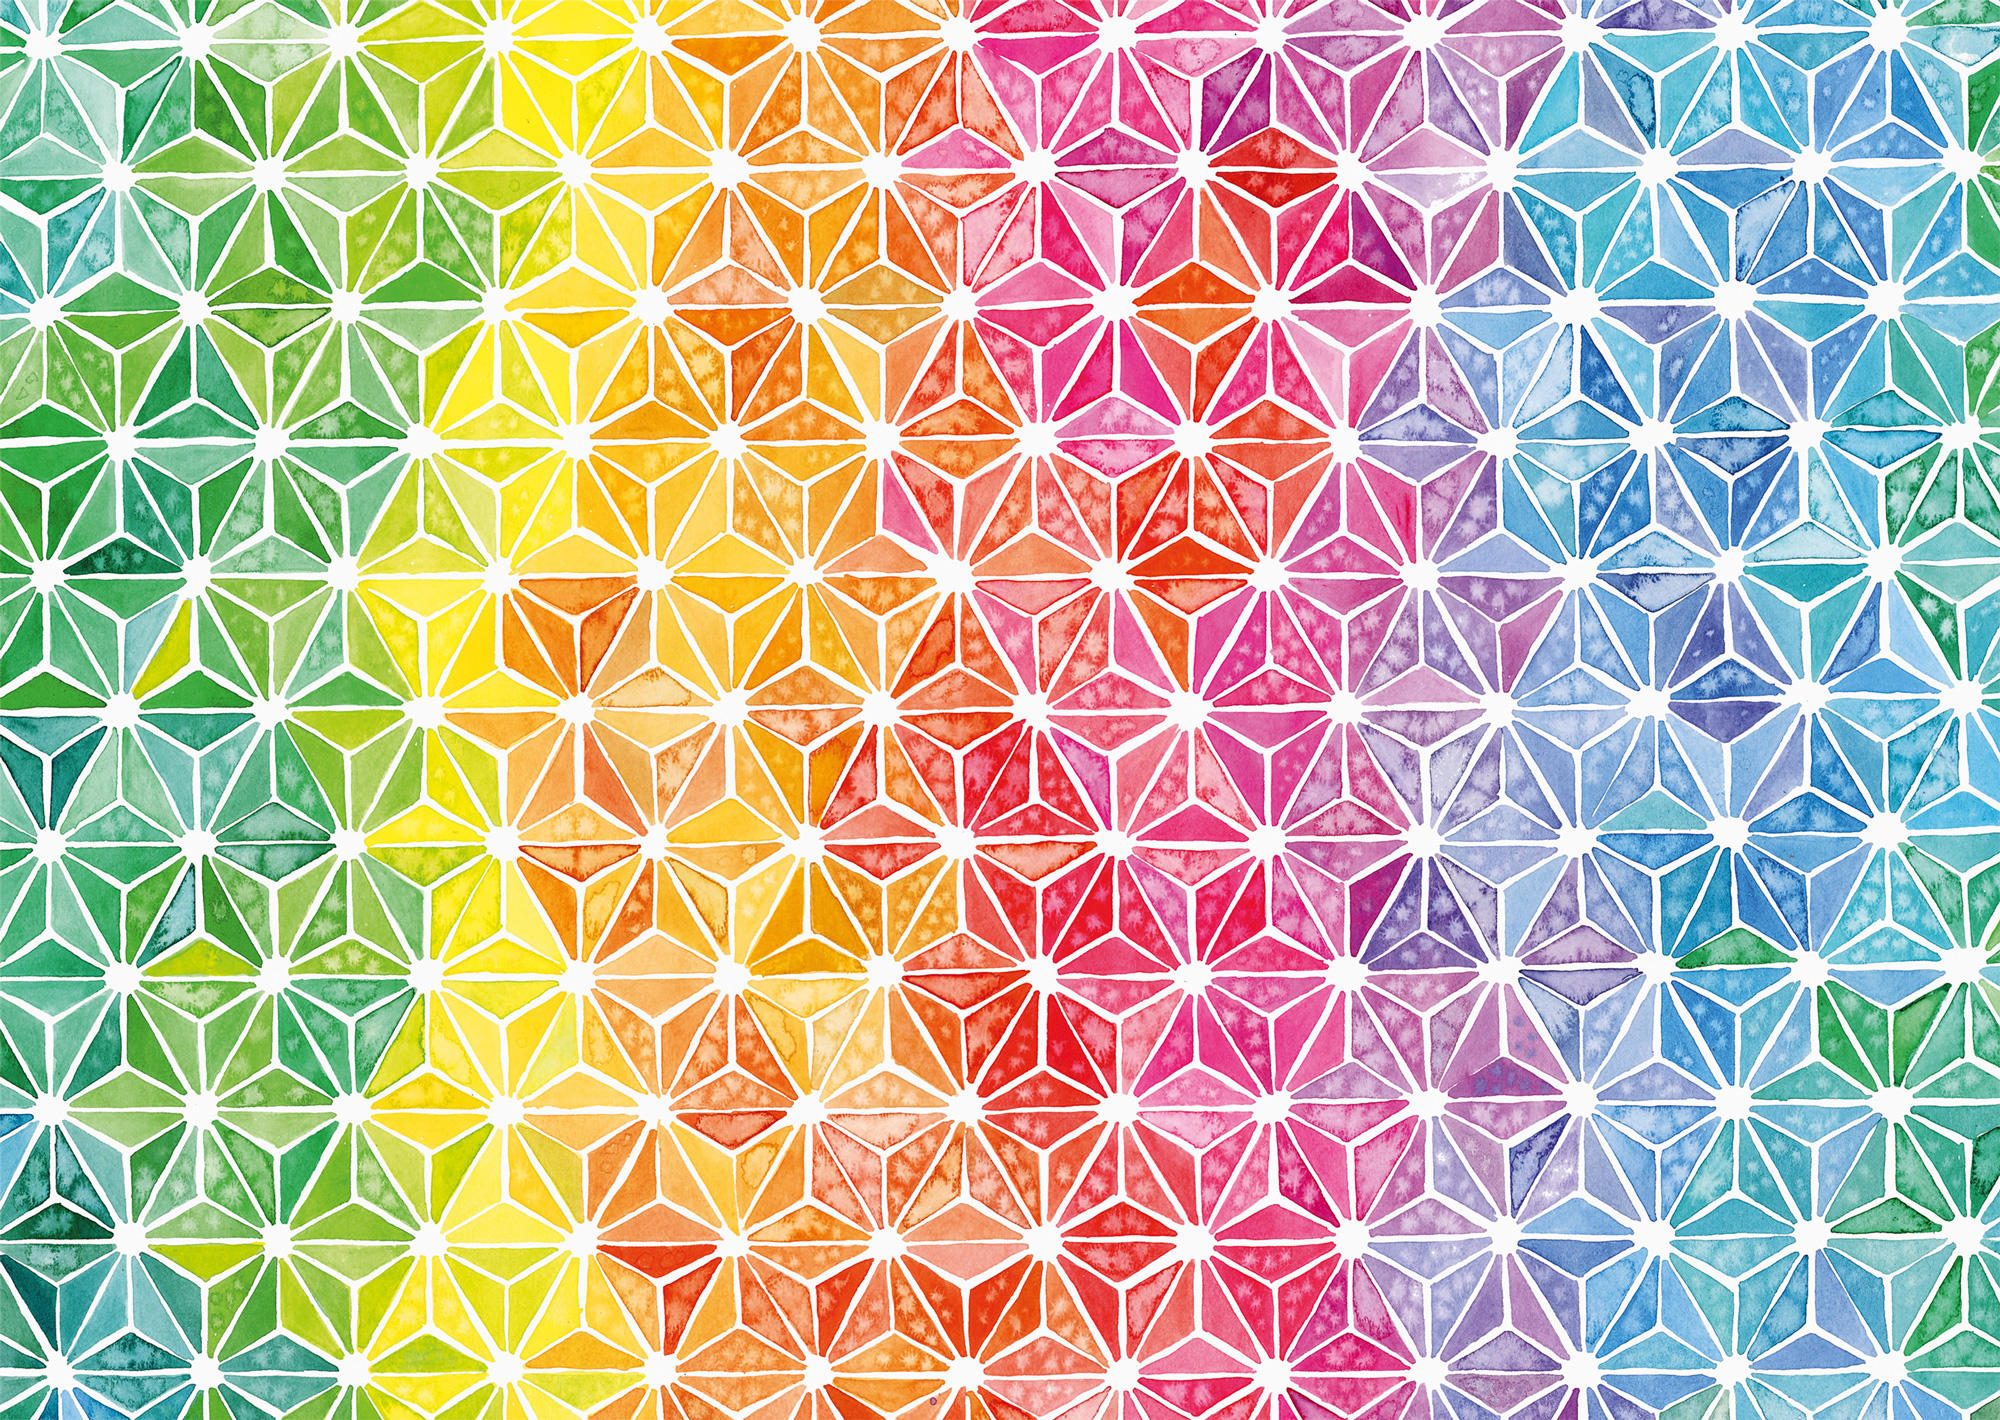 Puzzle Josie Lewis: Triángulos de colores